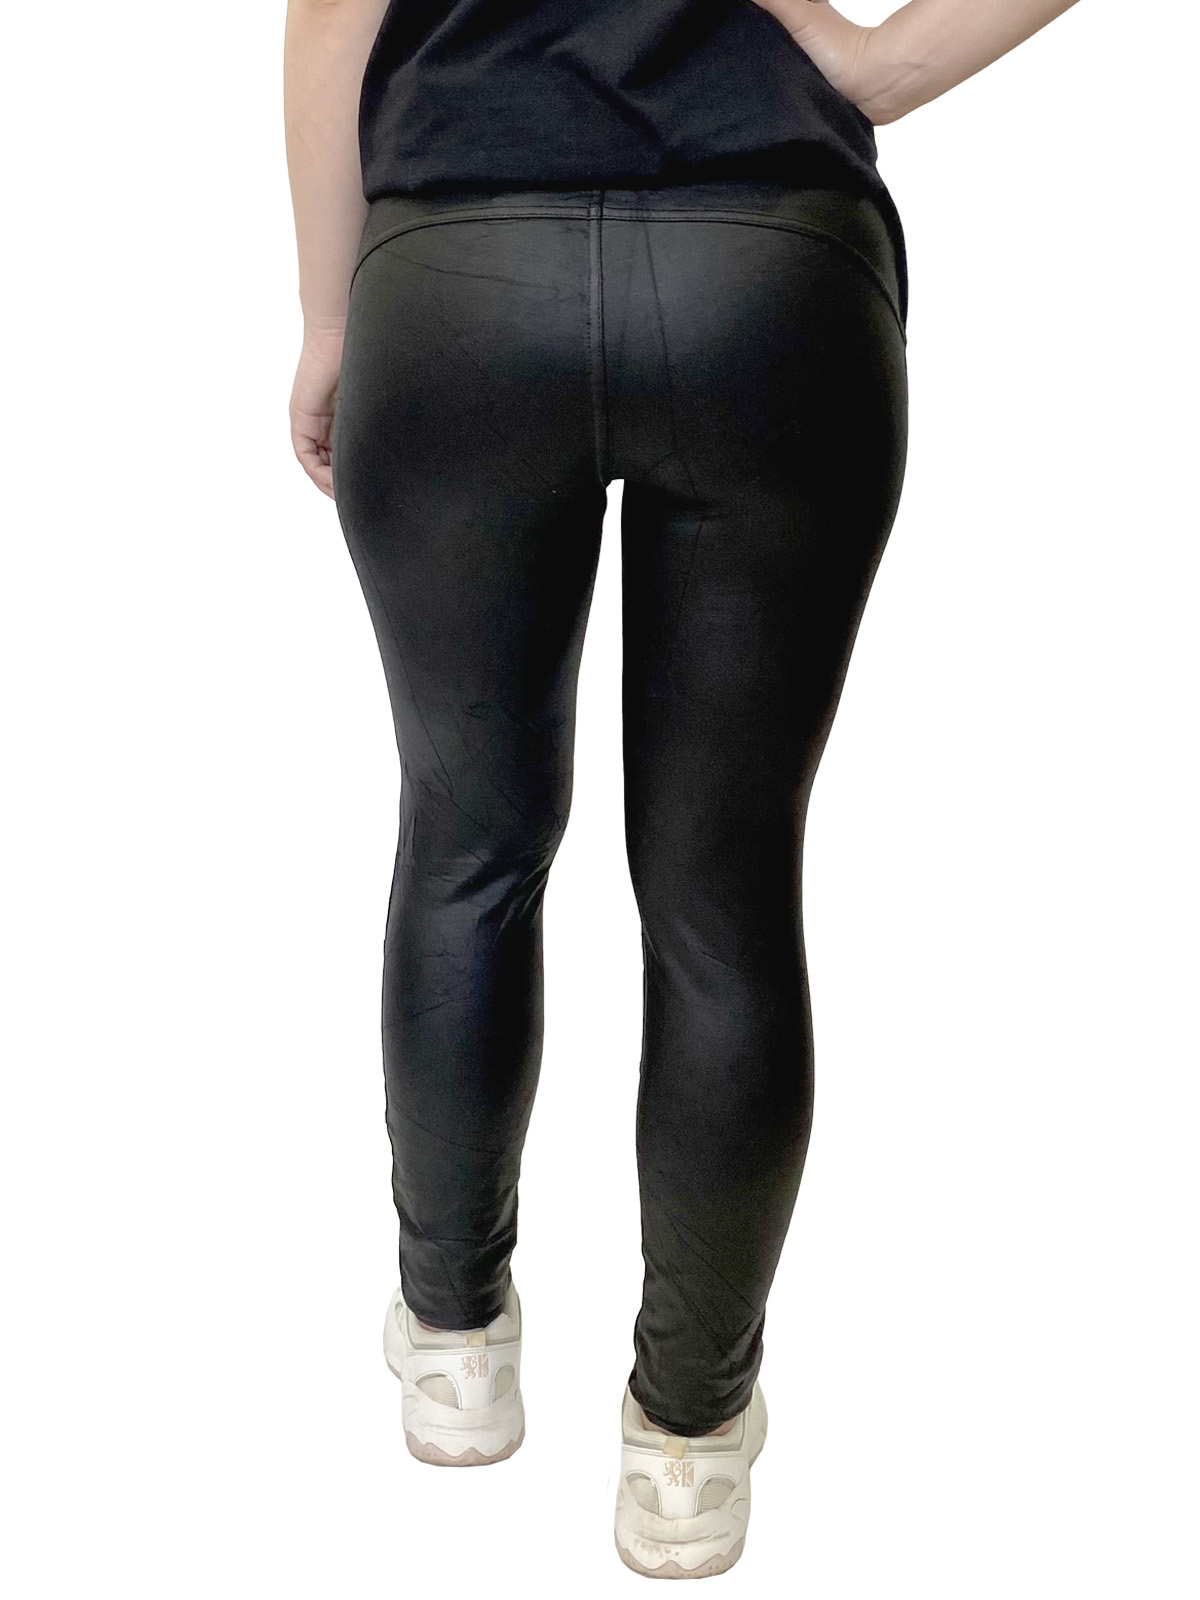 Купить в интернет магазине женские штаны в обтяжку